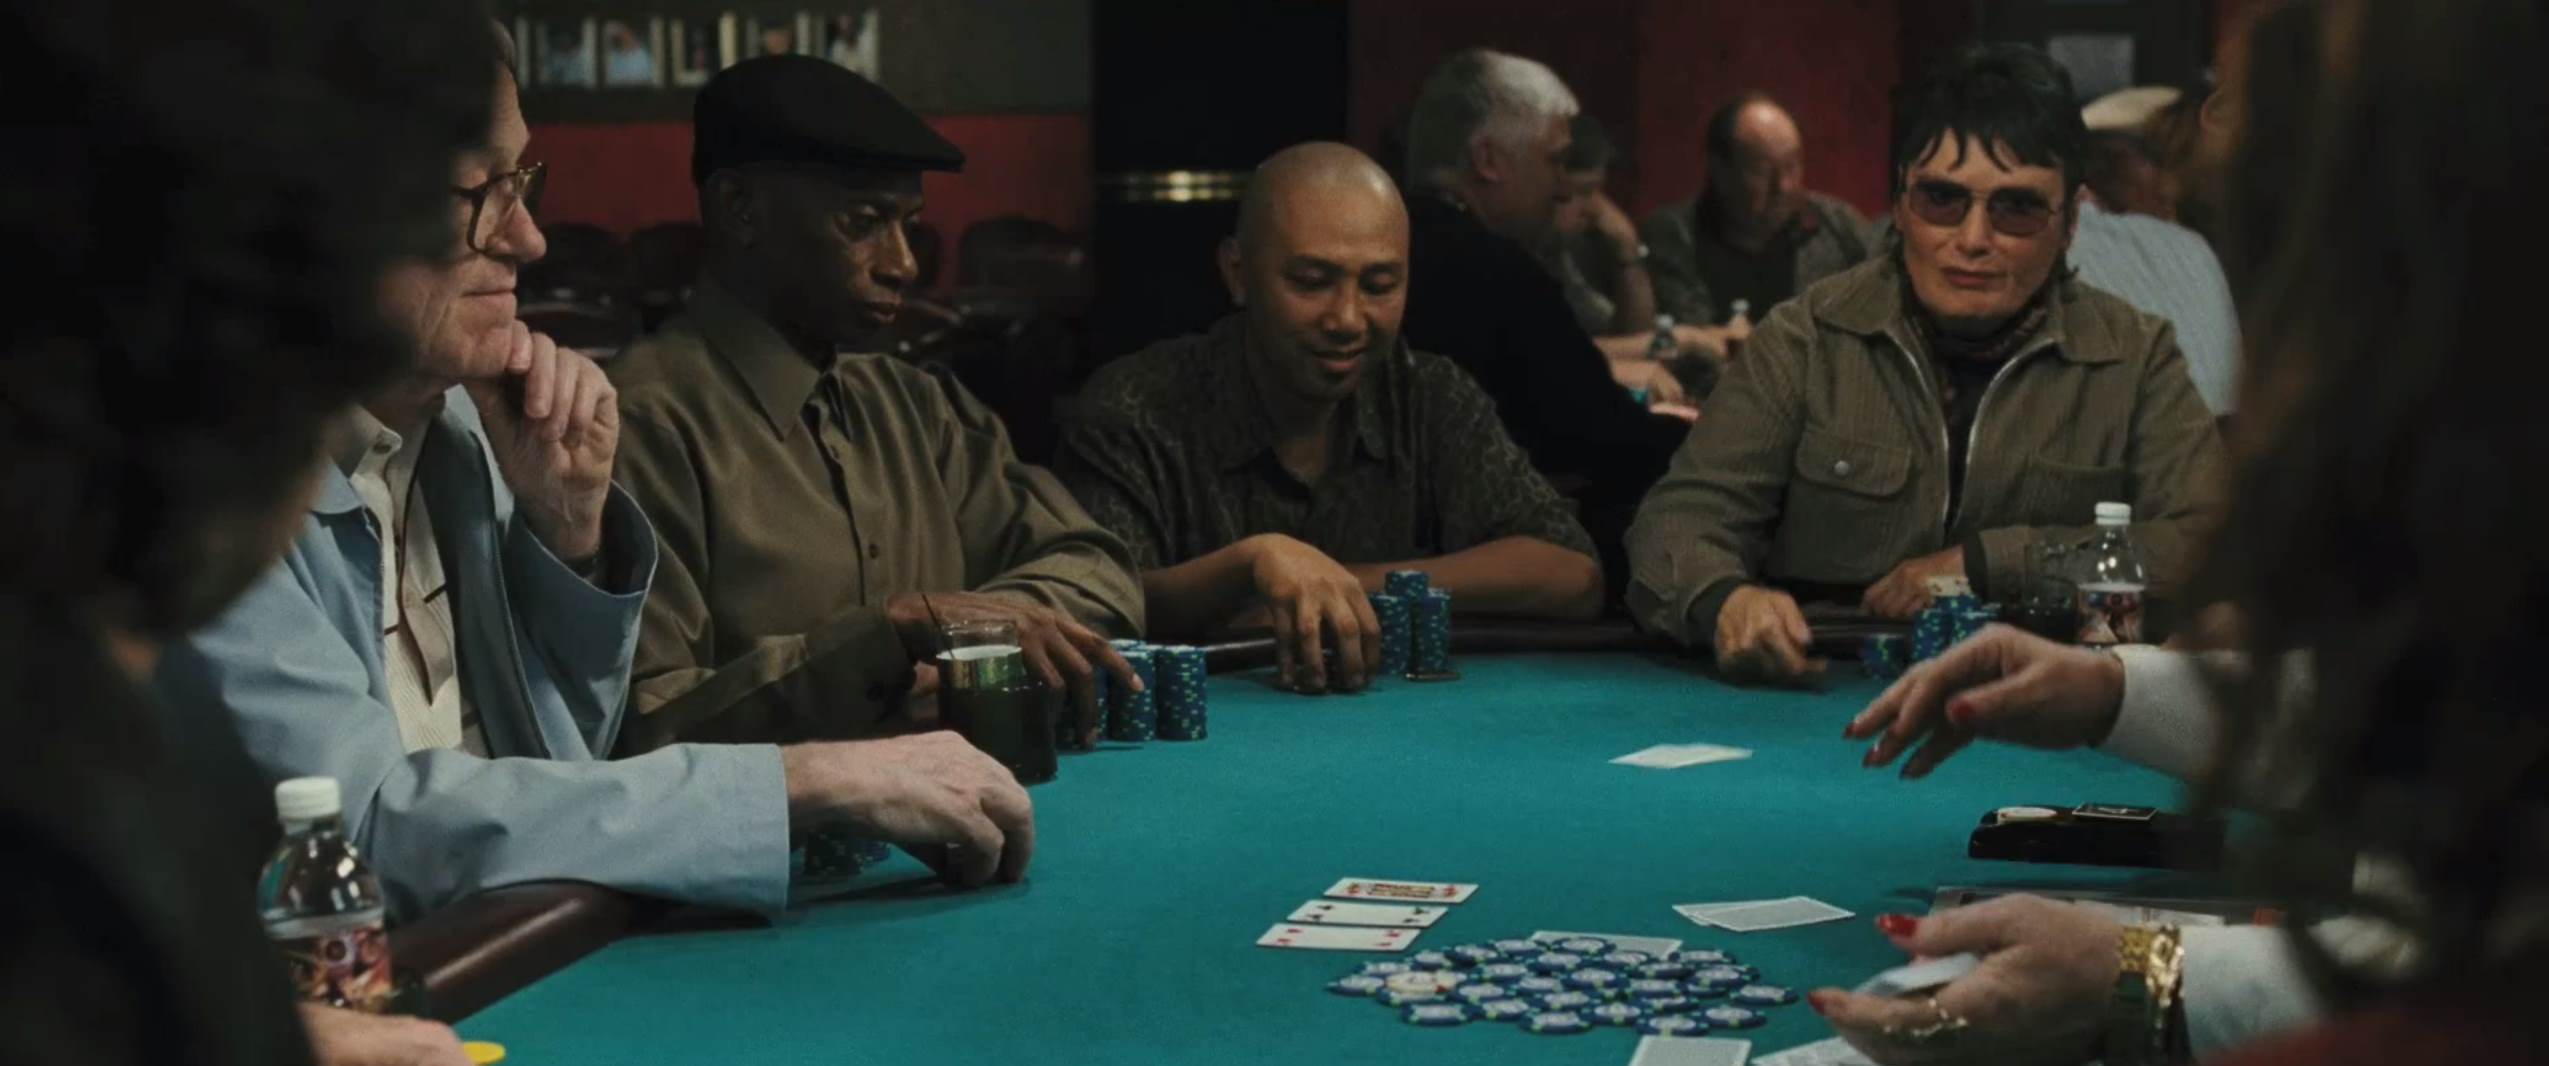 смотреть фильмы онлайн про казино карточных шулерах все фильмы об азарте